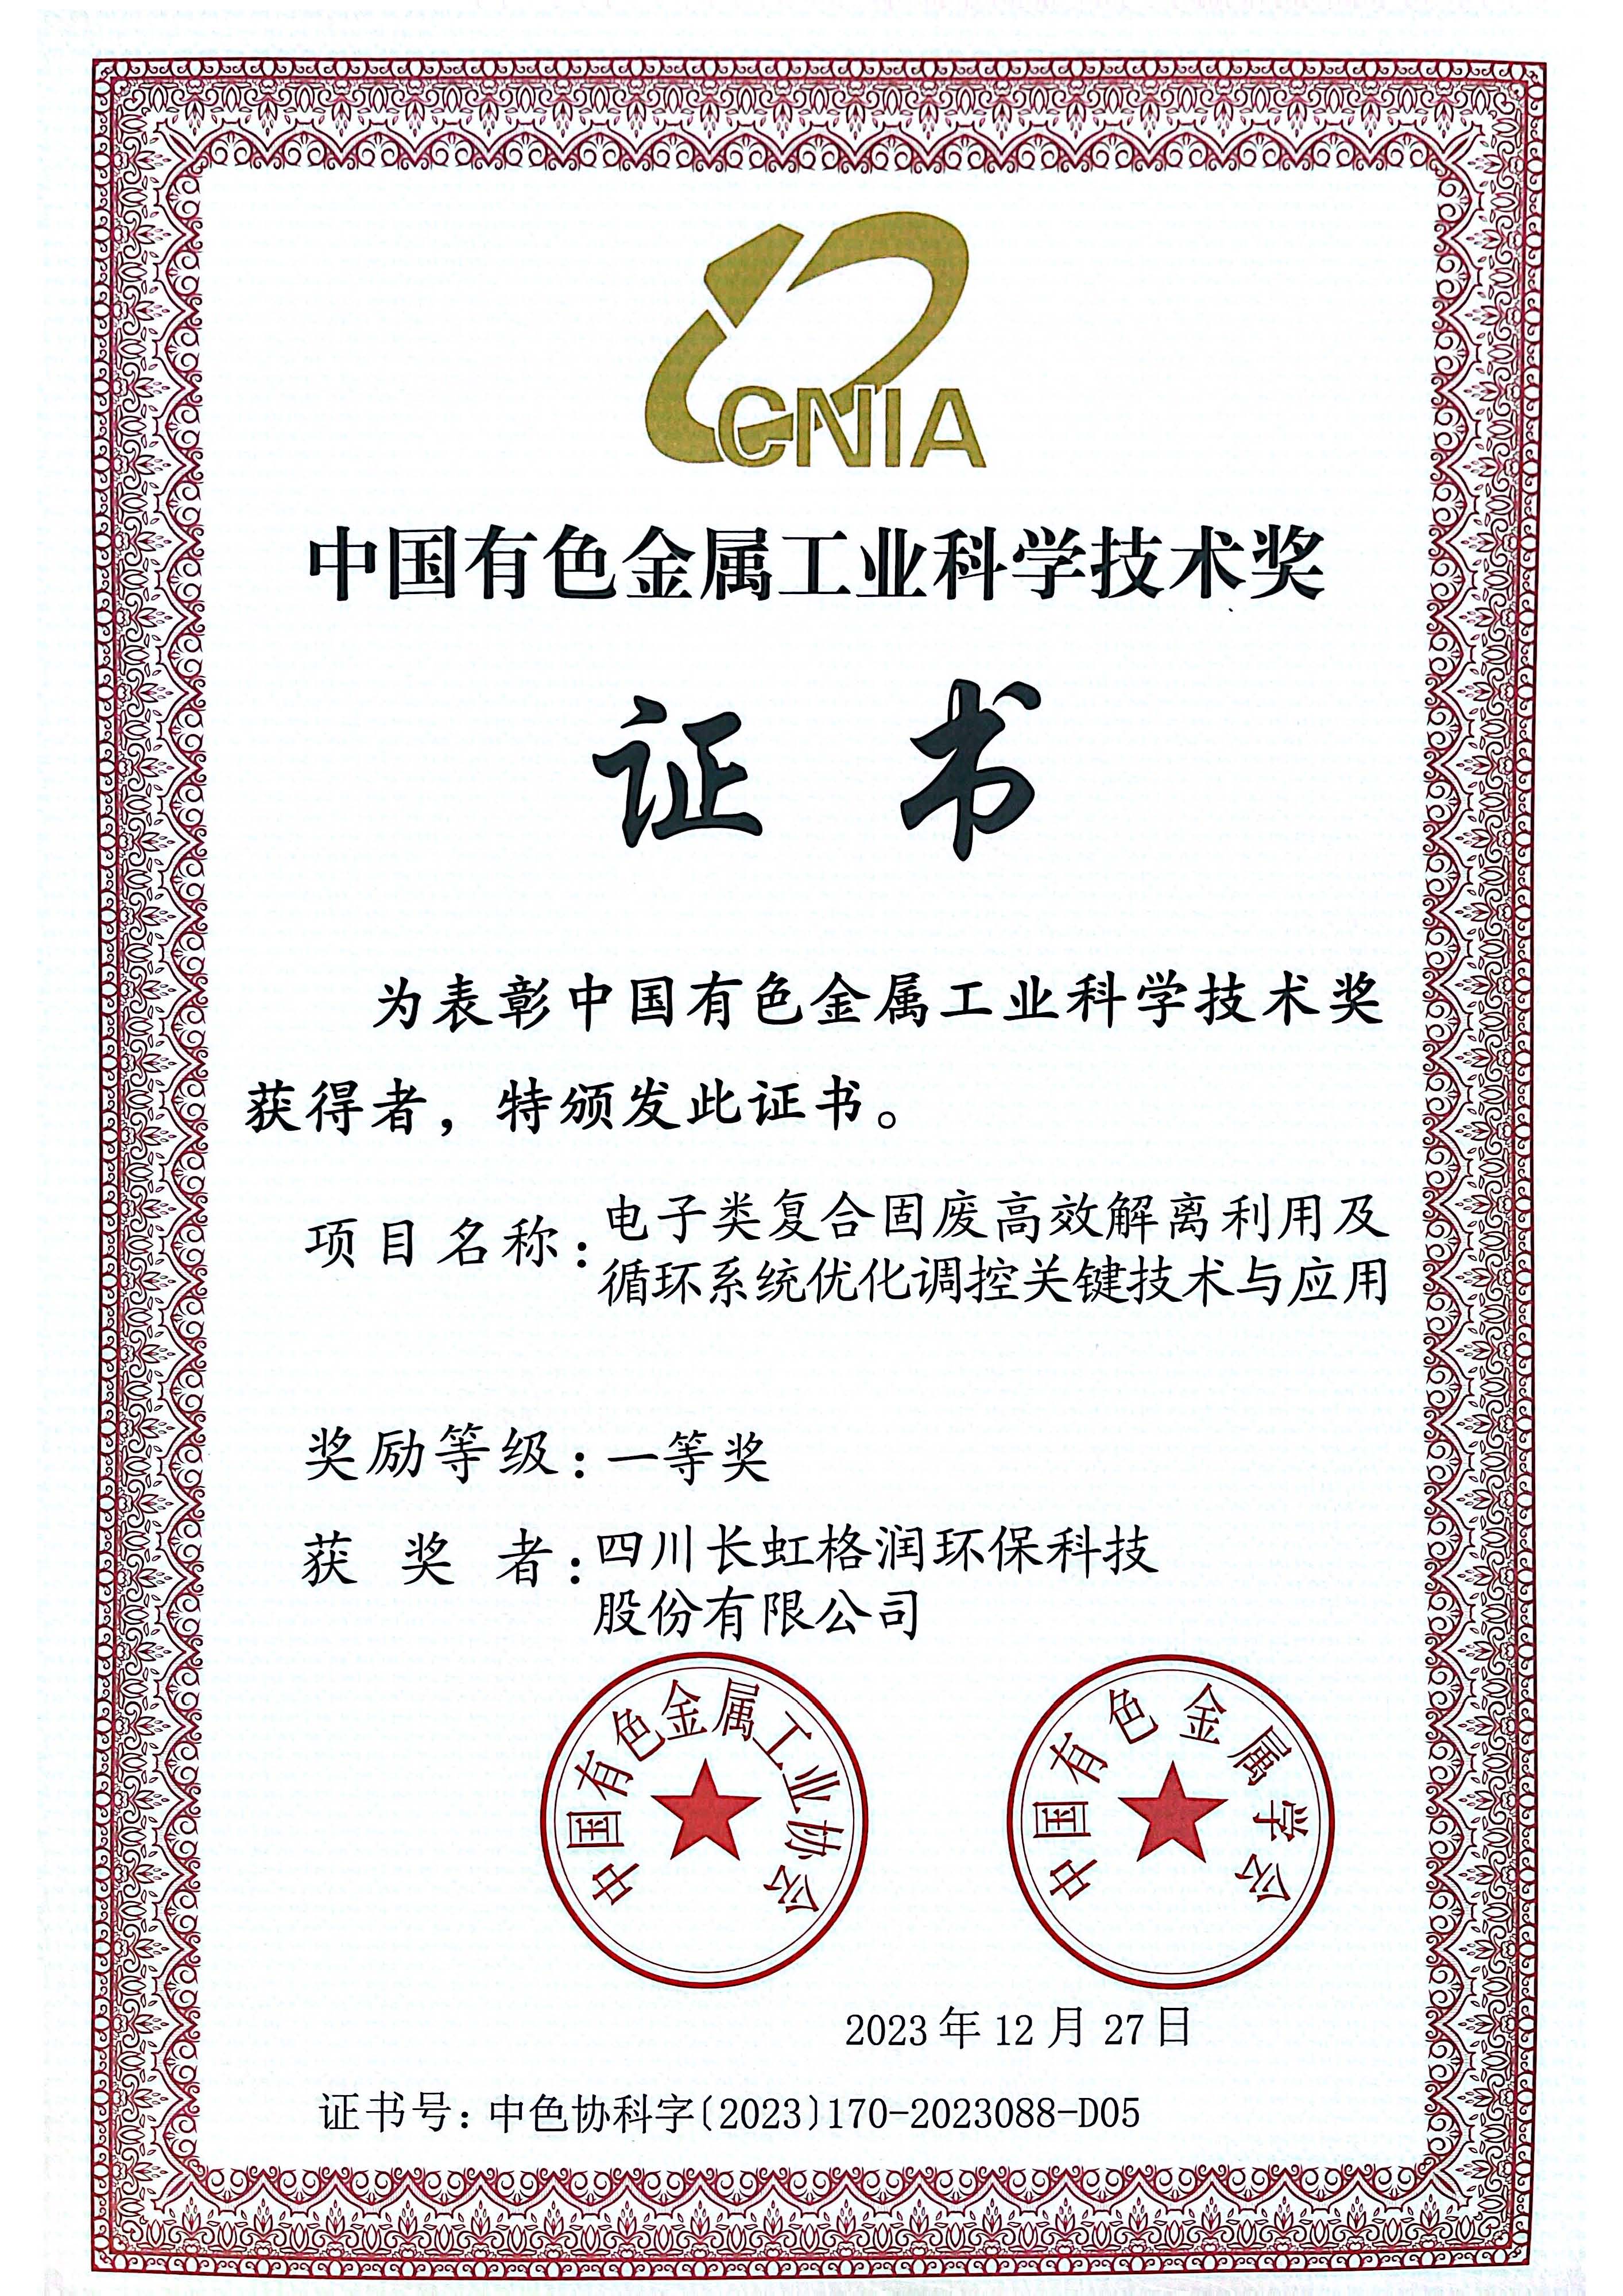 长虹格润荣获中国有色金属工业科学技术奖一等奖